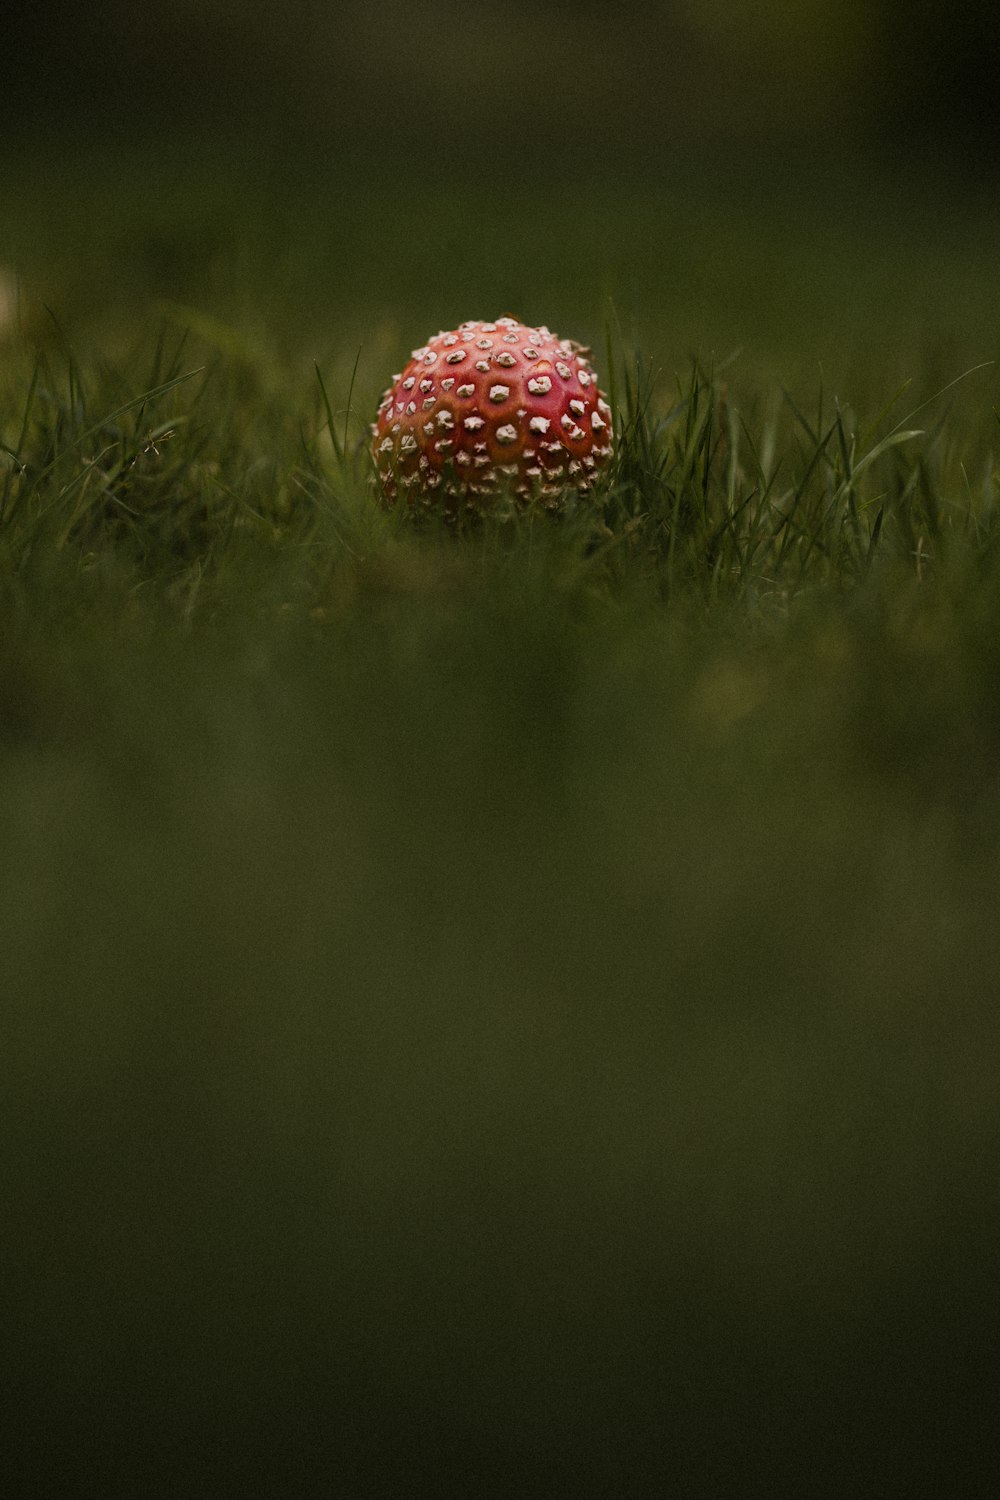 champignon à pois rouges et blancs sur champ d’herbe verte